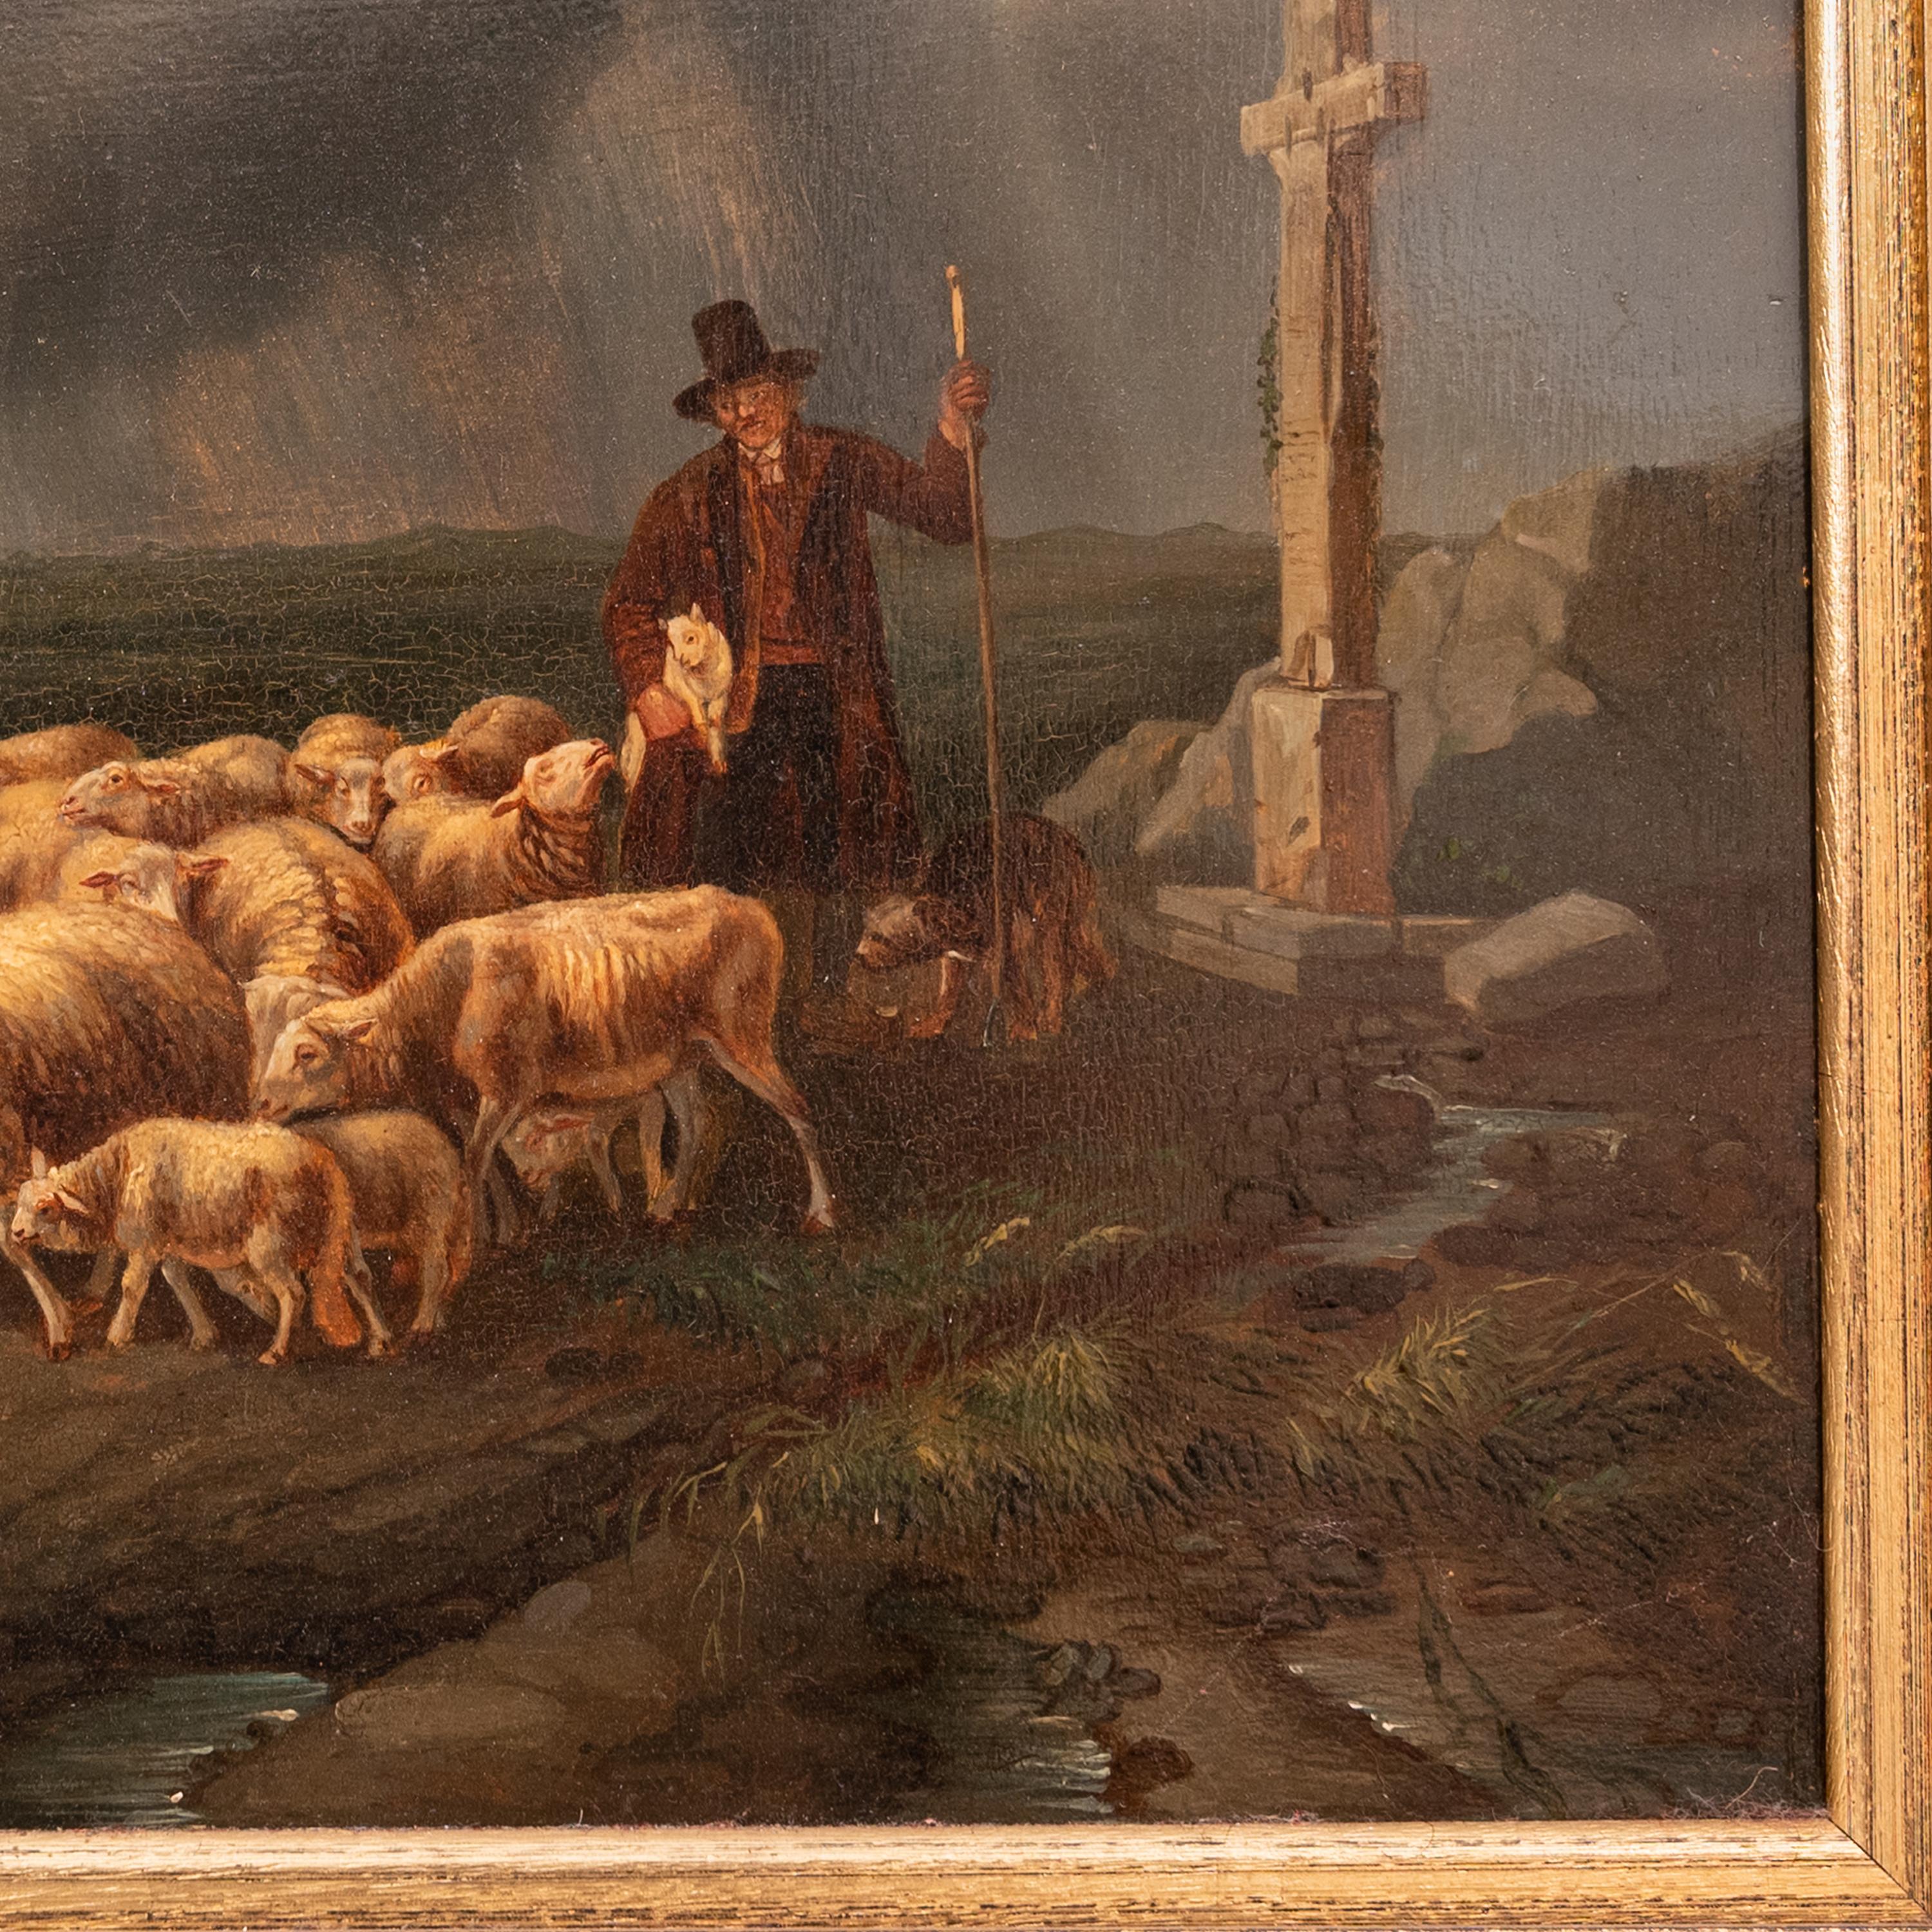 Ein gutes antikes Landschaftsgemälde des flämischen Künstlers Francois Backvis (1857-1926) in Öl auf Tafel.
Das Gemälde um 1880 zeigt das Gleichnis vom verlorenen Schaf aus den Evangelien von Matthäus und Lukas. Das Gemälde zeigt eine stürmische